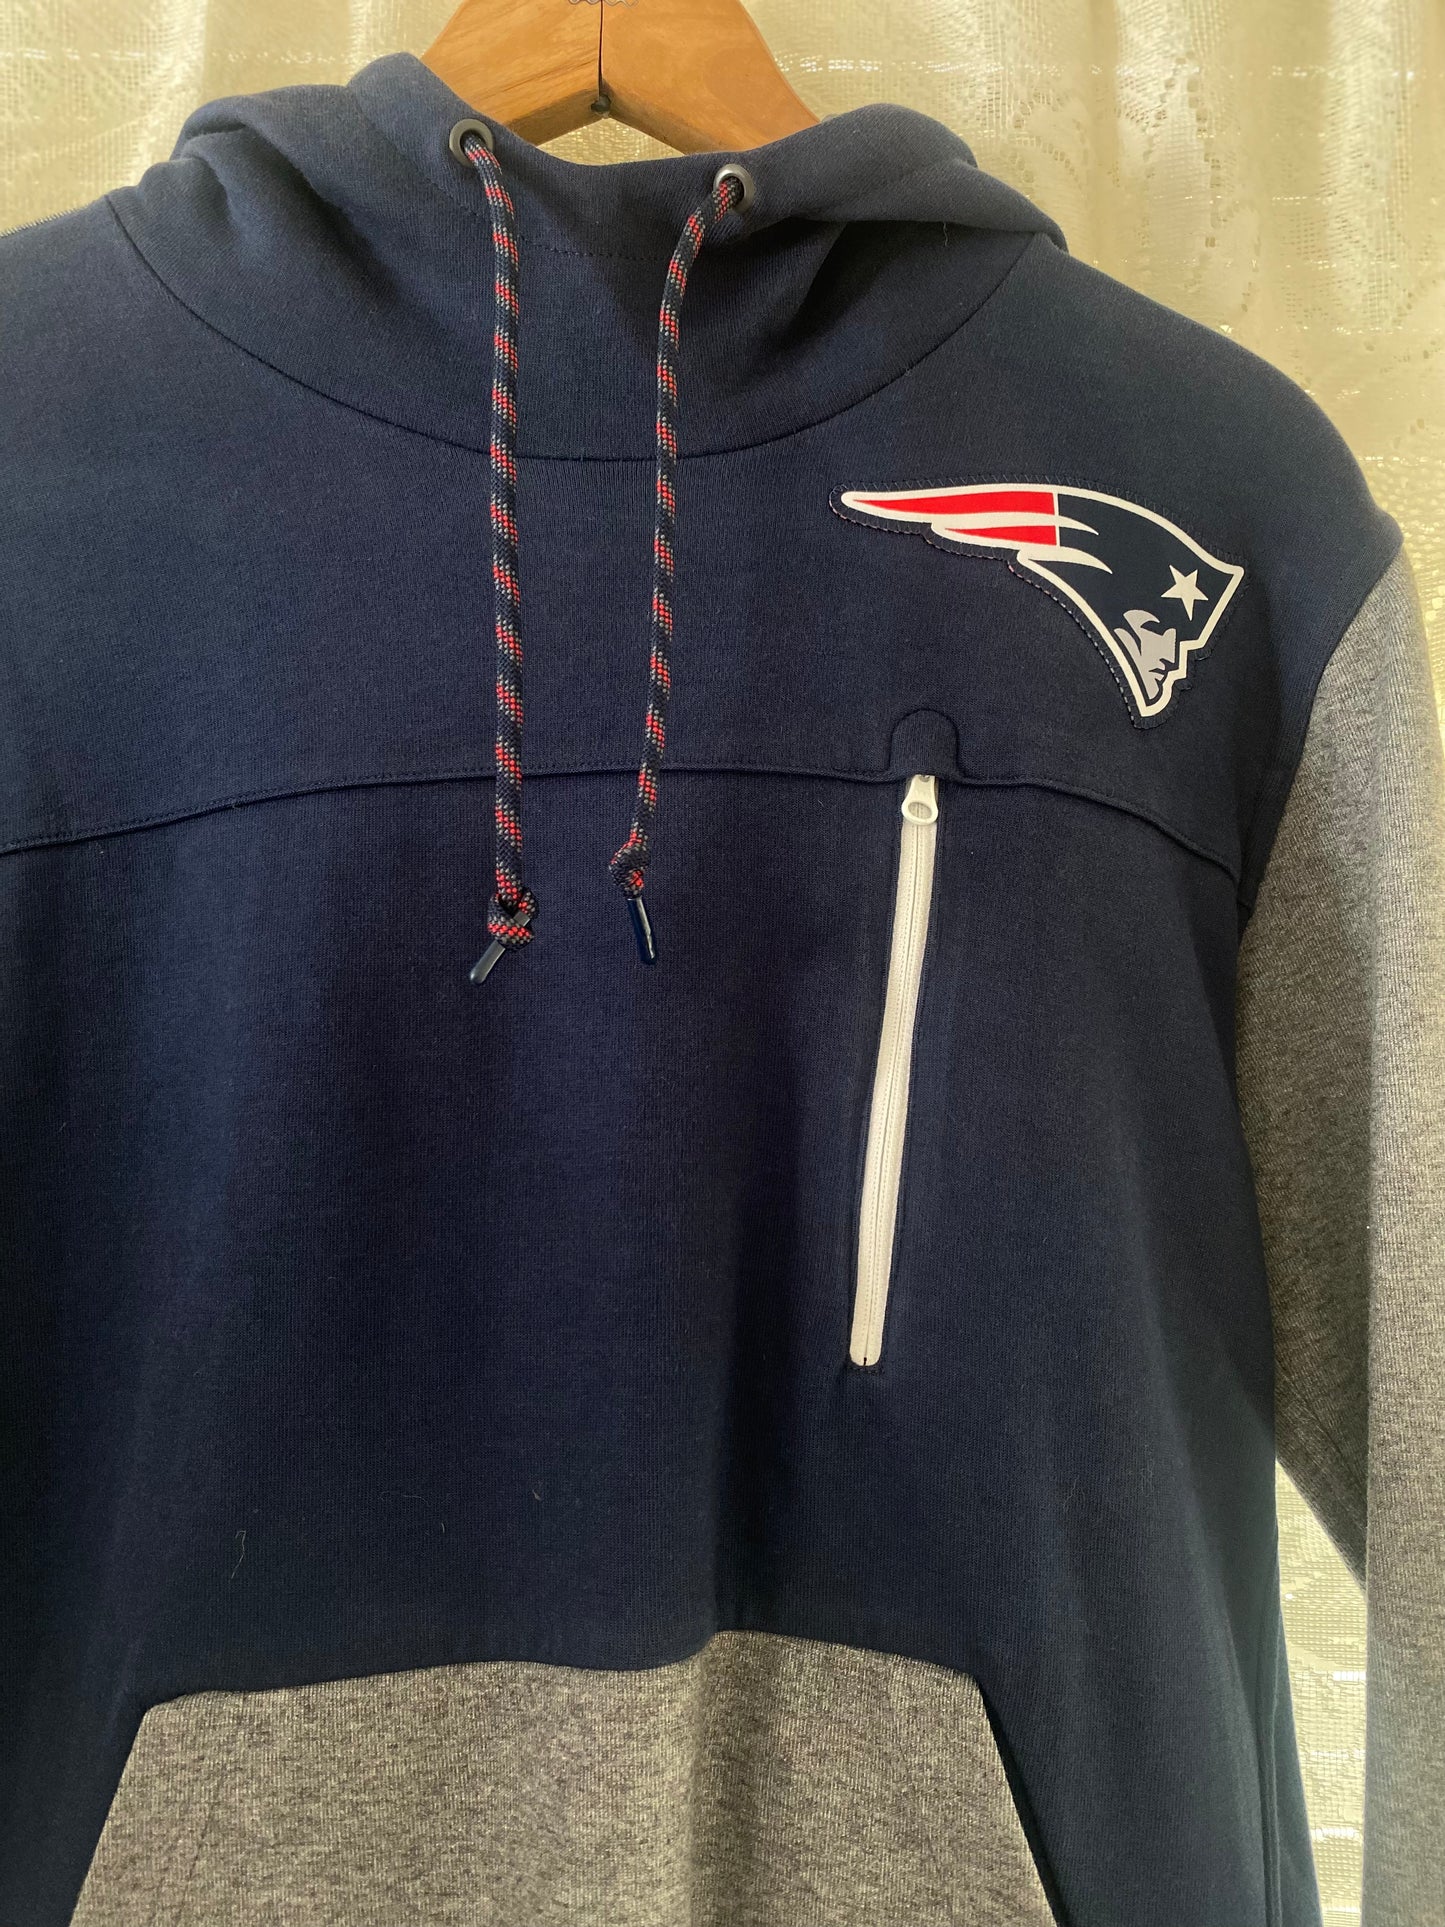 Patriots hoodie